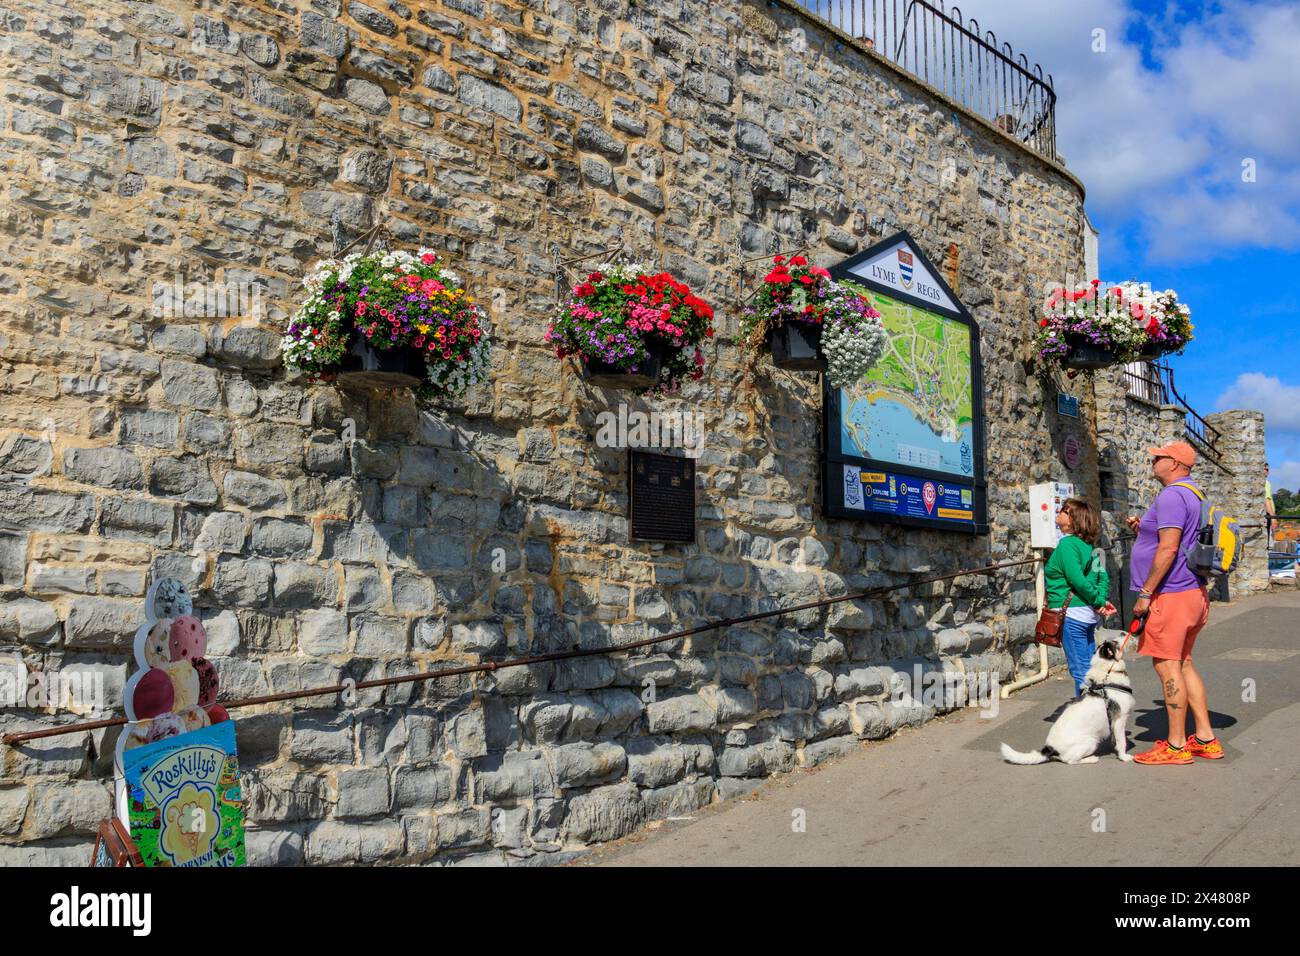 Visitatori che studiano una grande mappa della città circondata da attraenti e colorati cesti appesi a Lyme Regis, Dorset, Inghilterra, Regno Unito Foto Stock